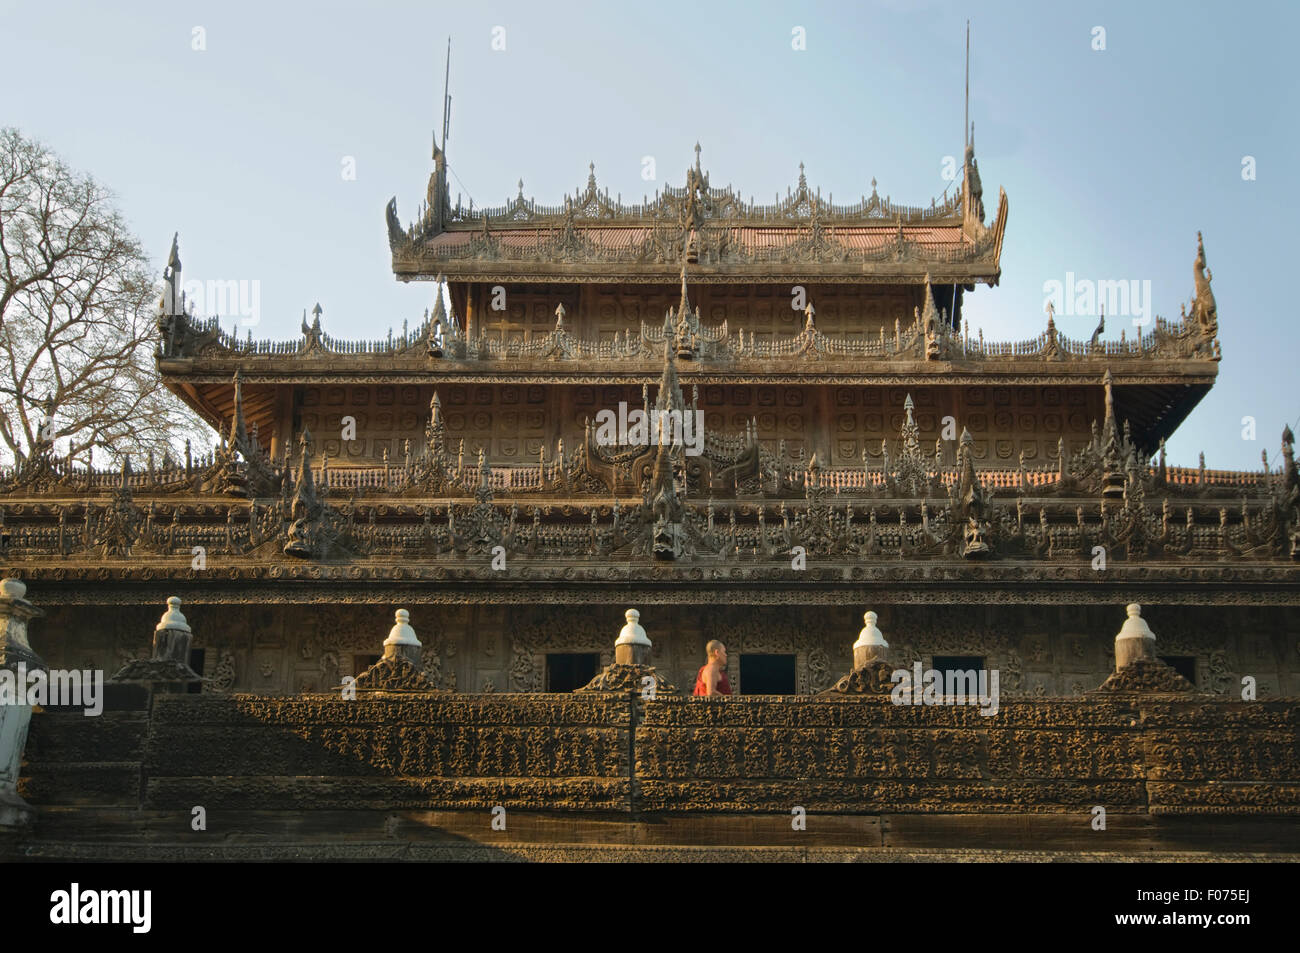 Asien, MYANMAR (BURMA), Mandalay, Shwenedaw Kyaung (Golden Palace Kloster, gebaut von König Mindon 1878), Teak buddhistisches Kloster Stockfoto